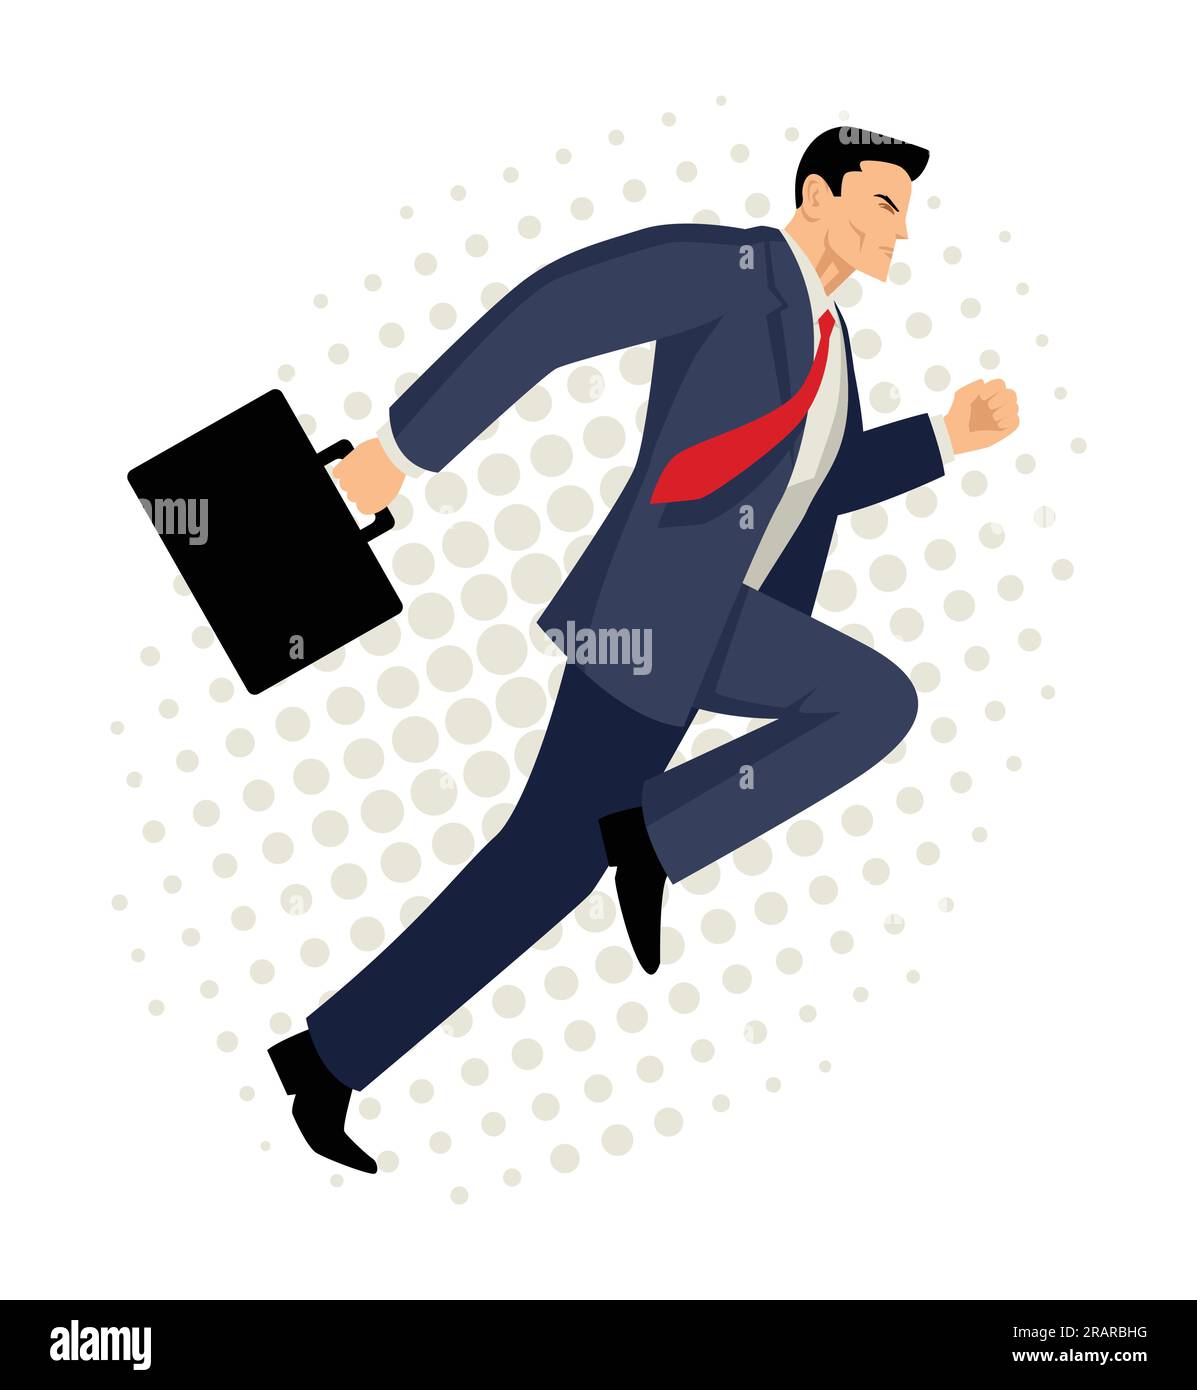 Cartoon-Illustration eines Geschäftsmannes, der mit Aktentasche, Business, energischem, dynamischem Konzept läuft Stock Vektor